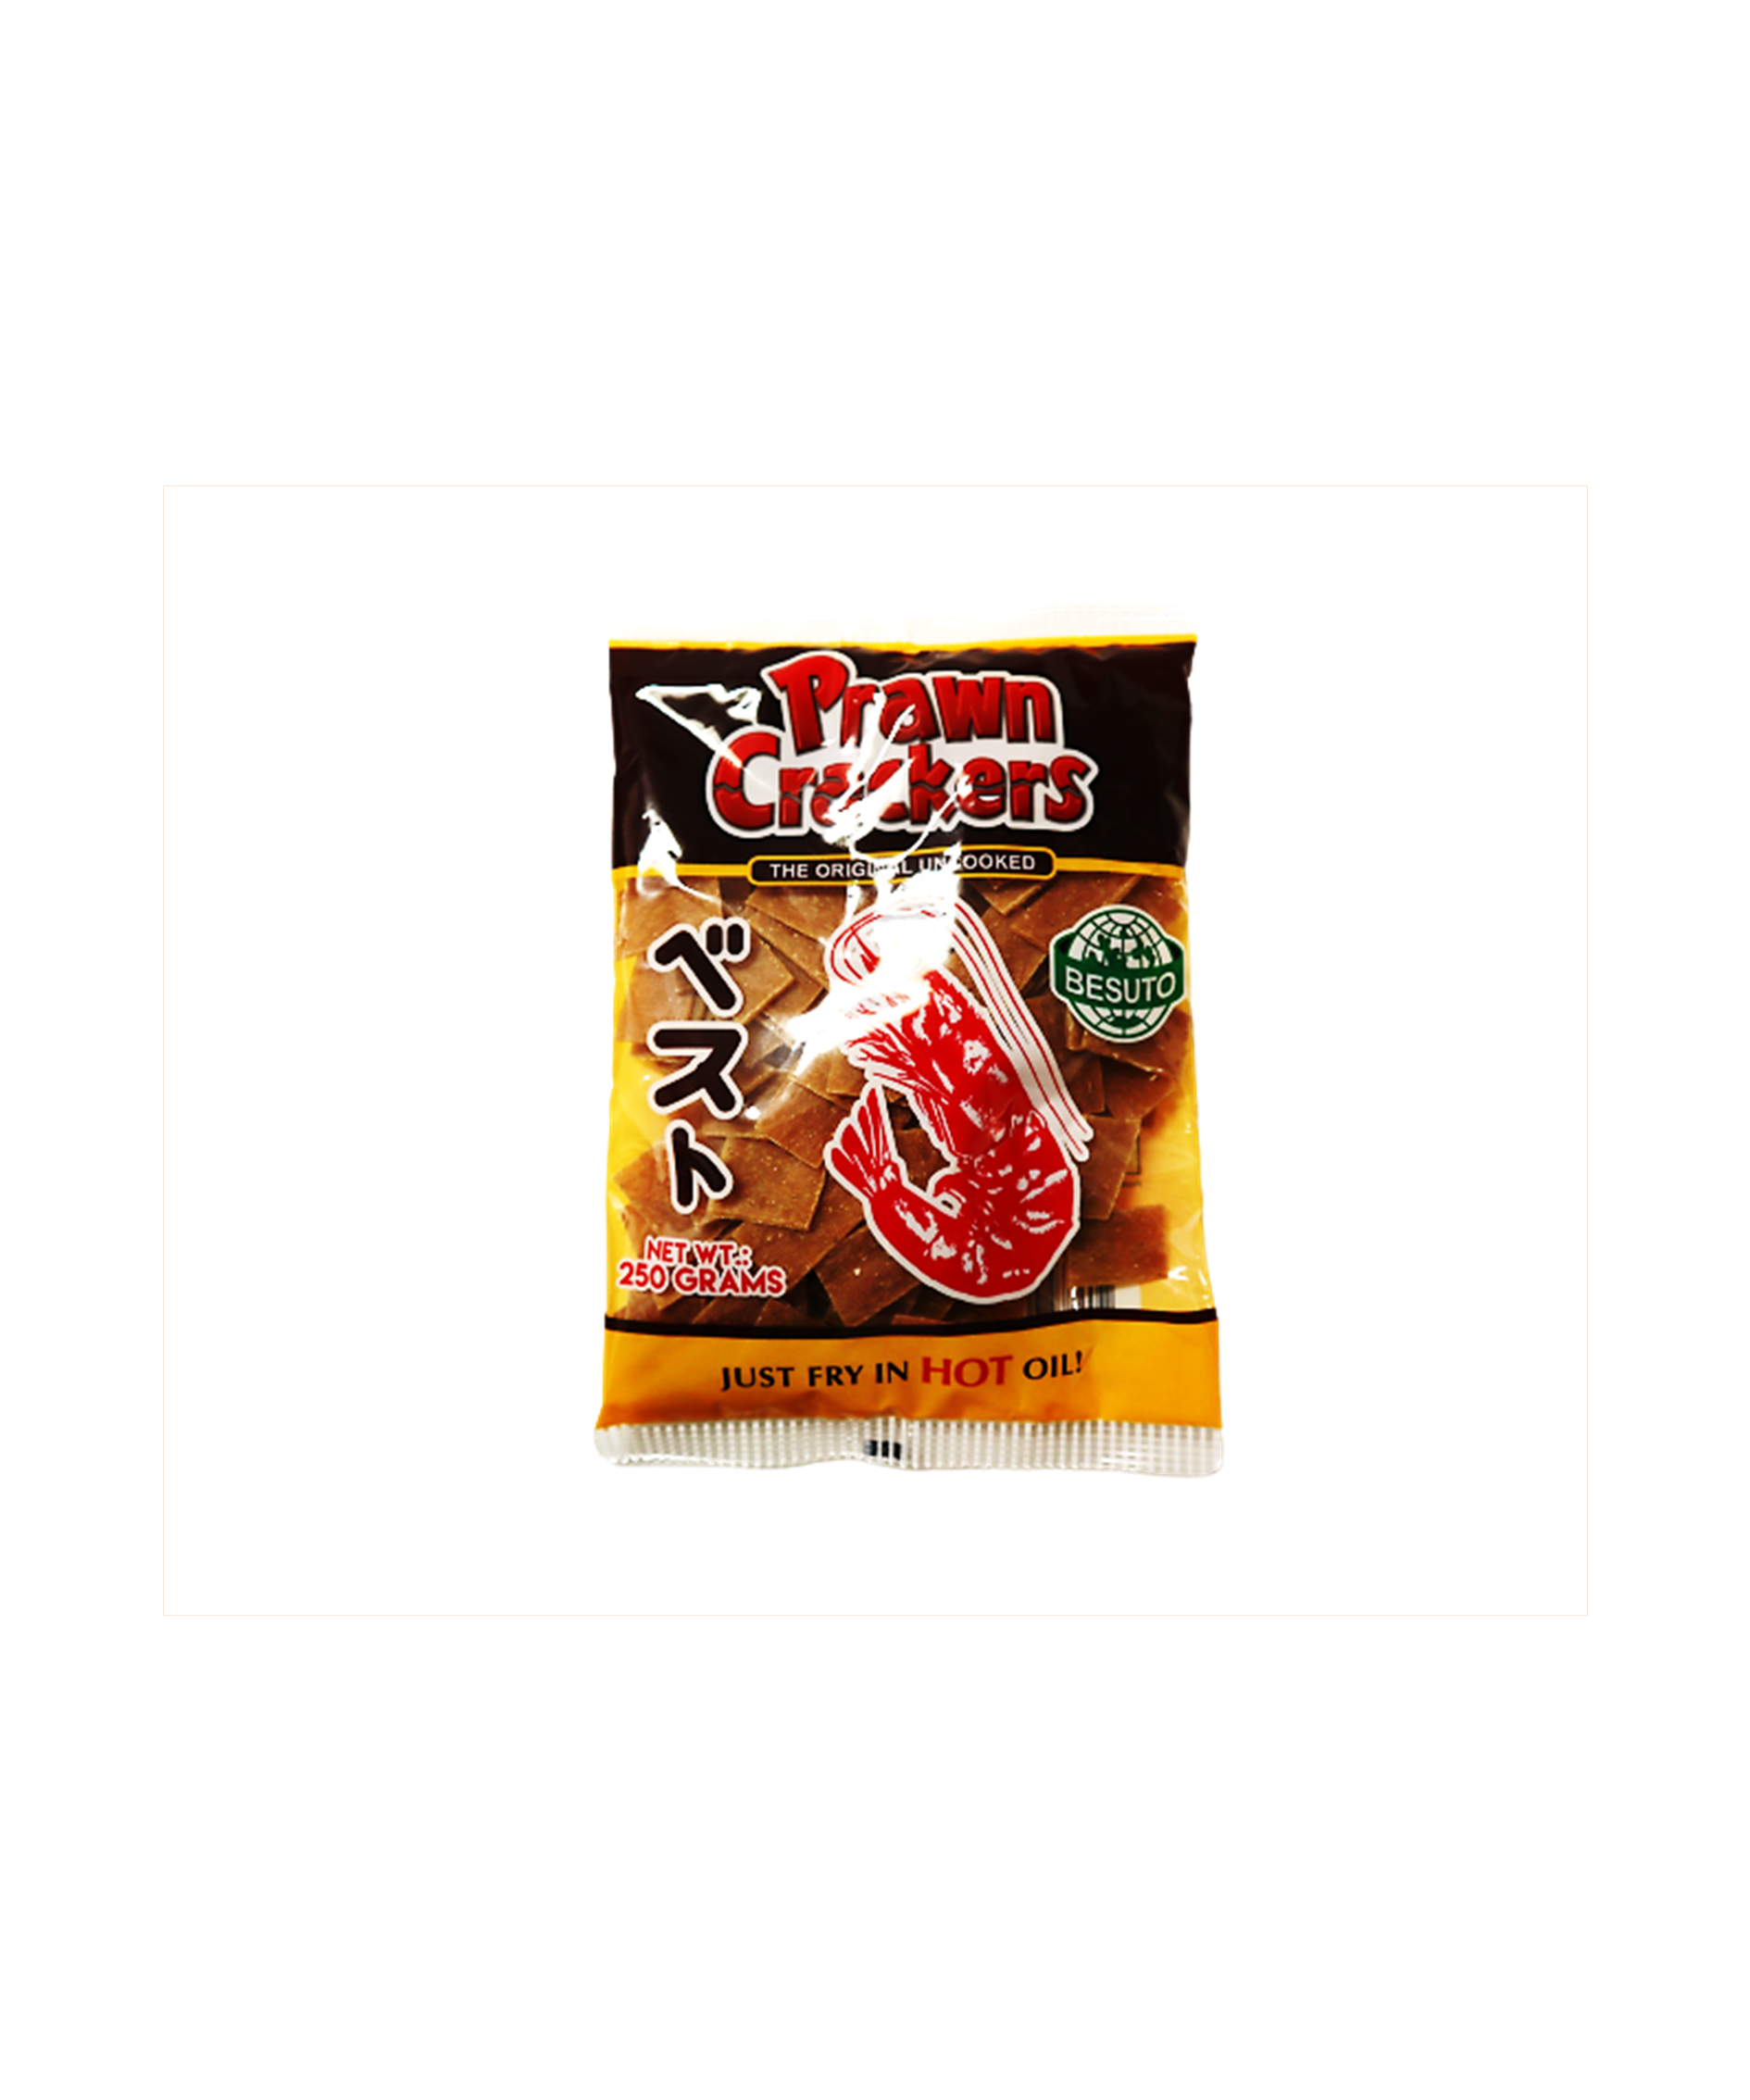 Besuto Squid Crackers 250g